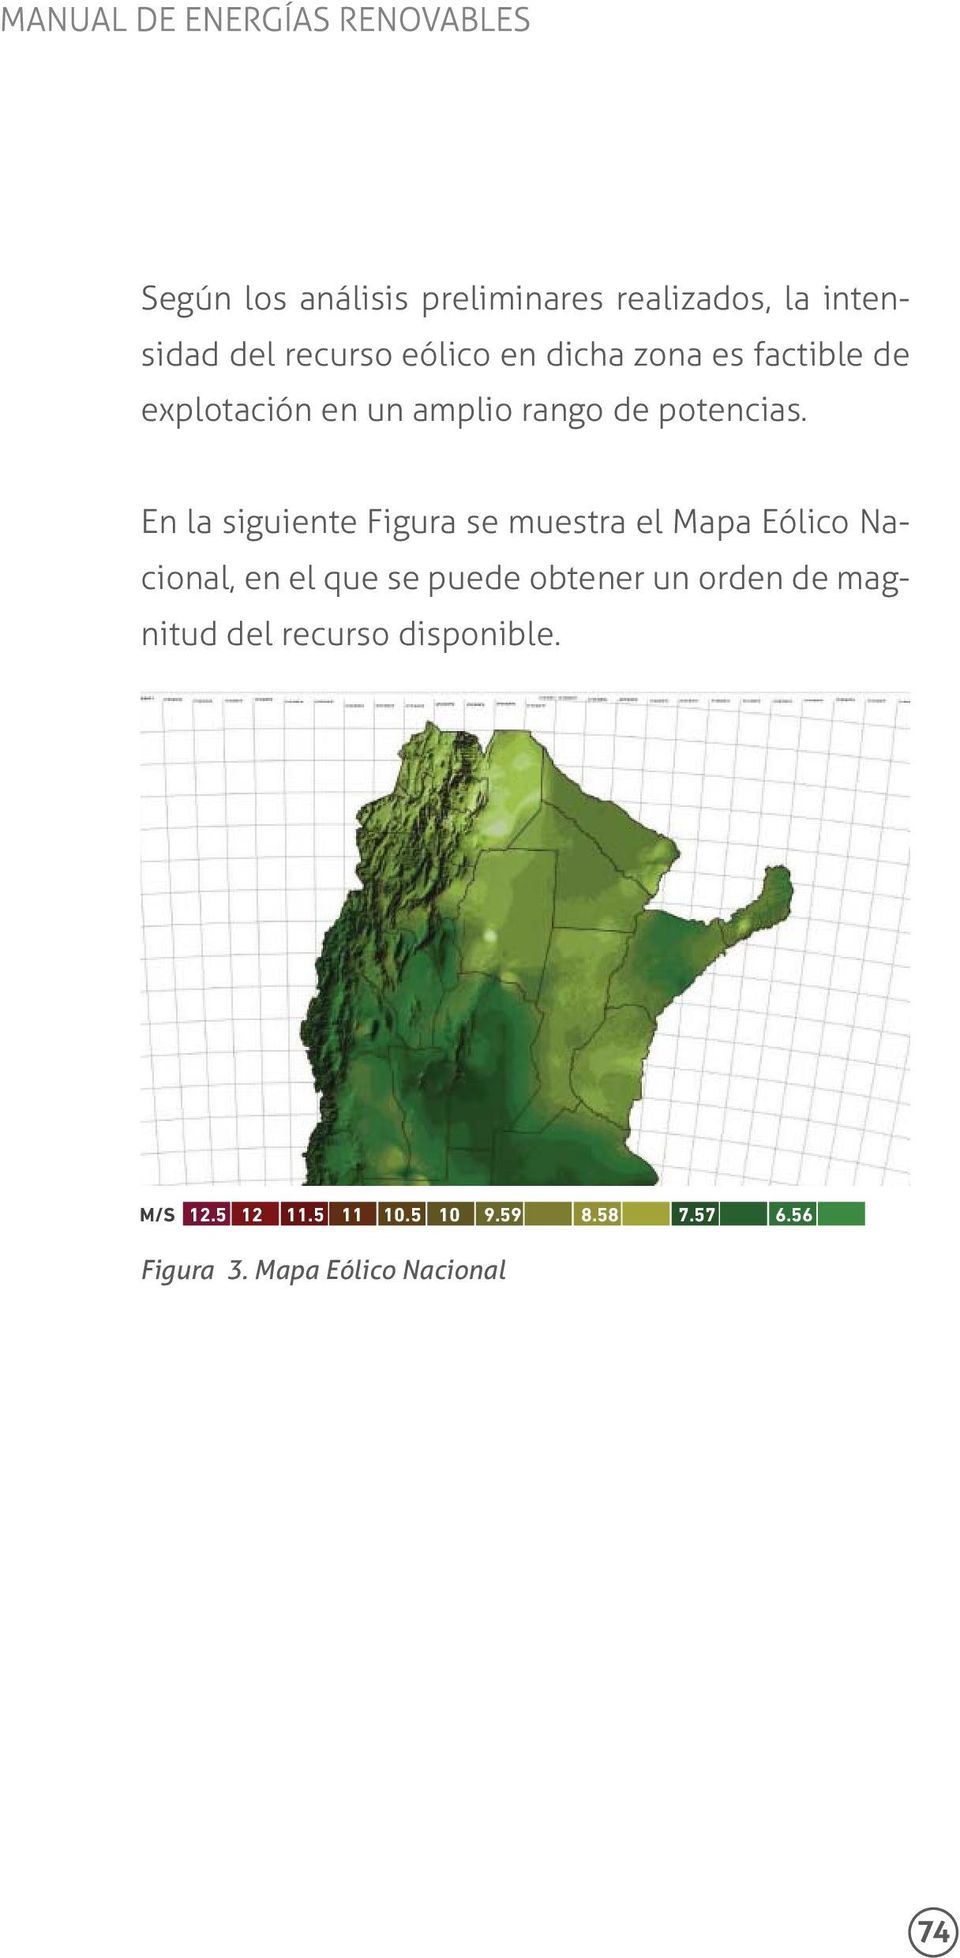 En la siguiente Figura se muestra el Mapa Eólico Nacional, en el que se puede obtener un